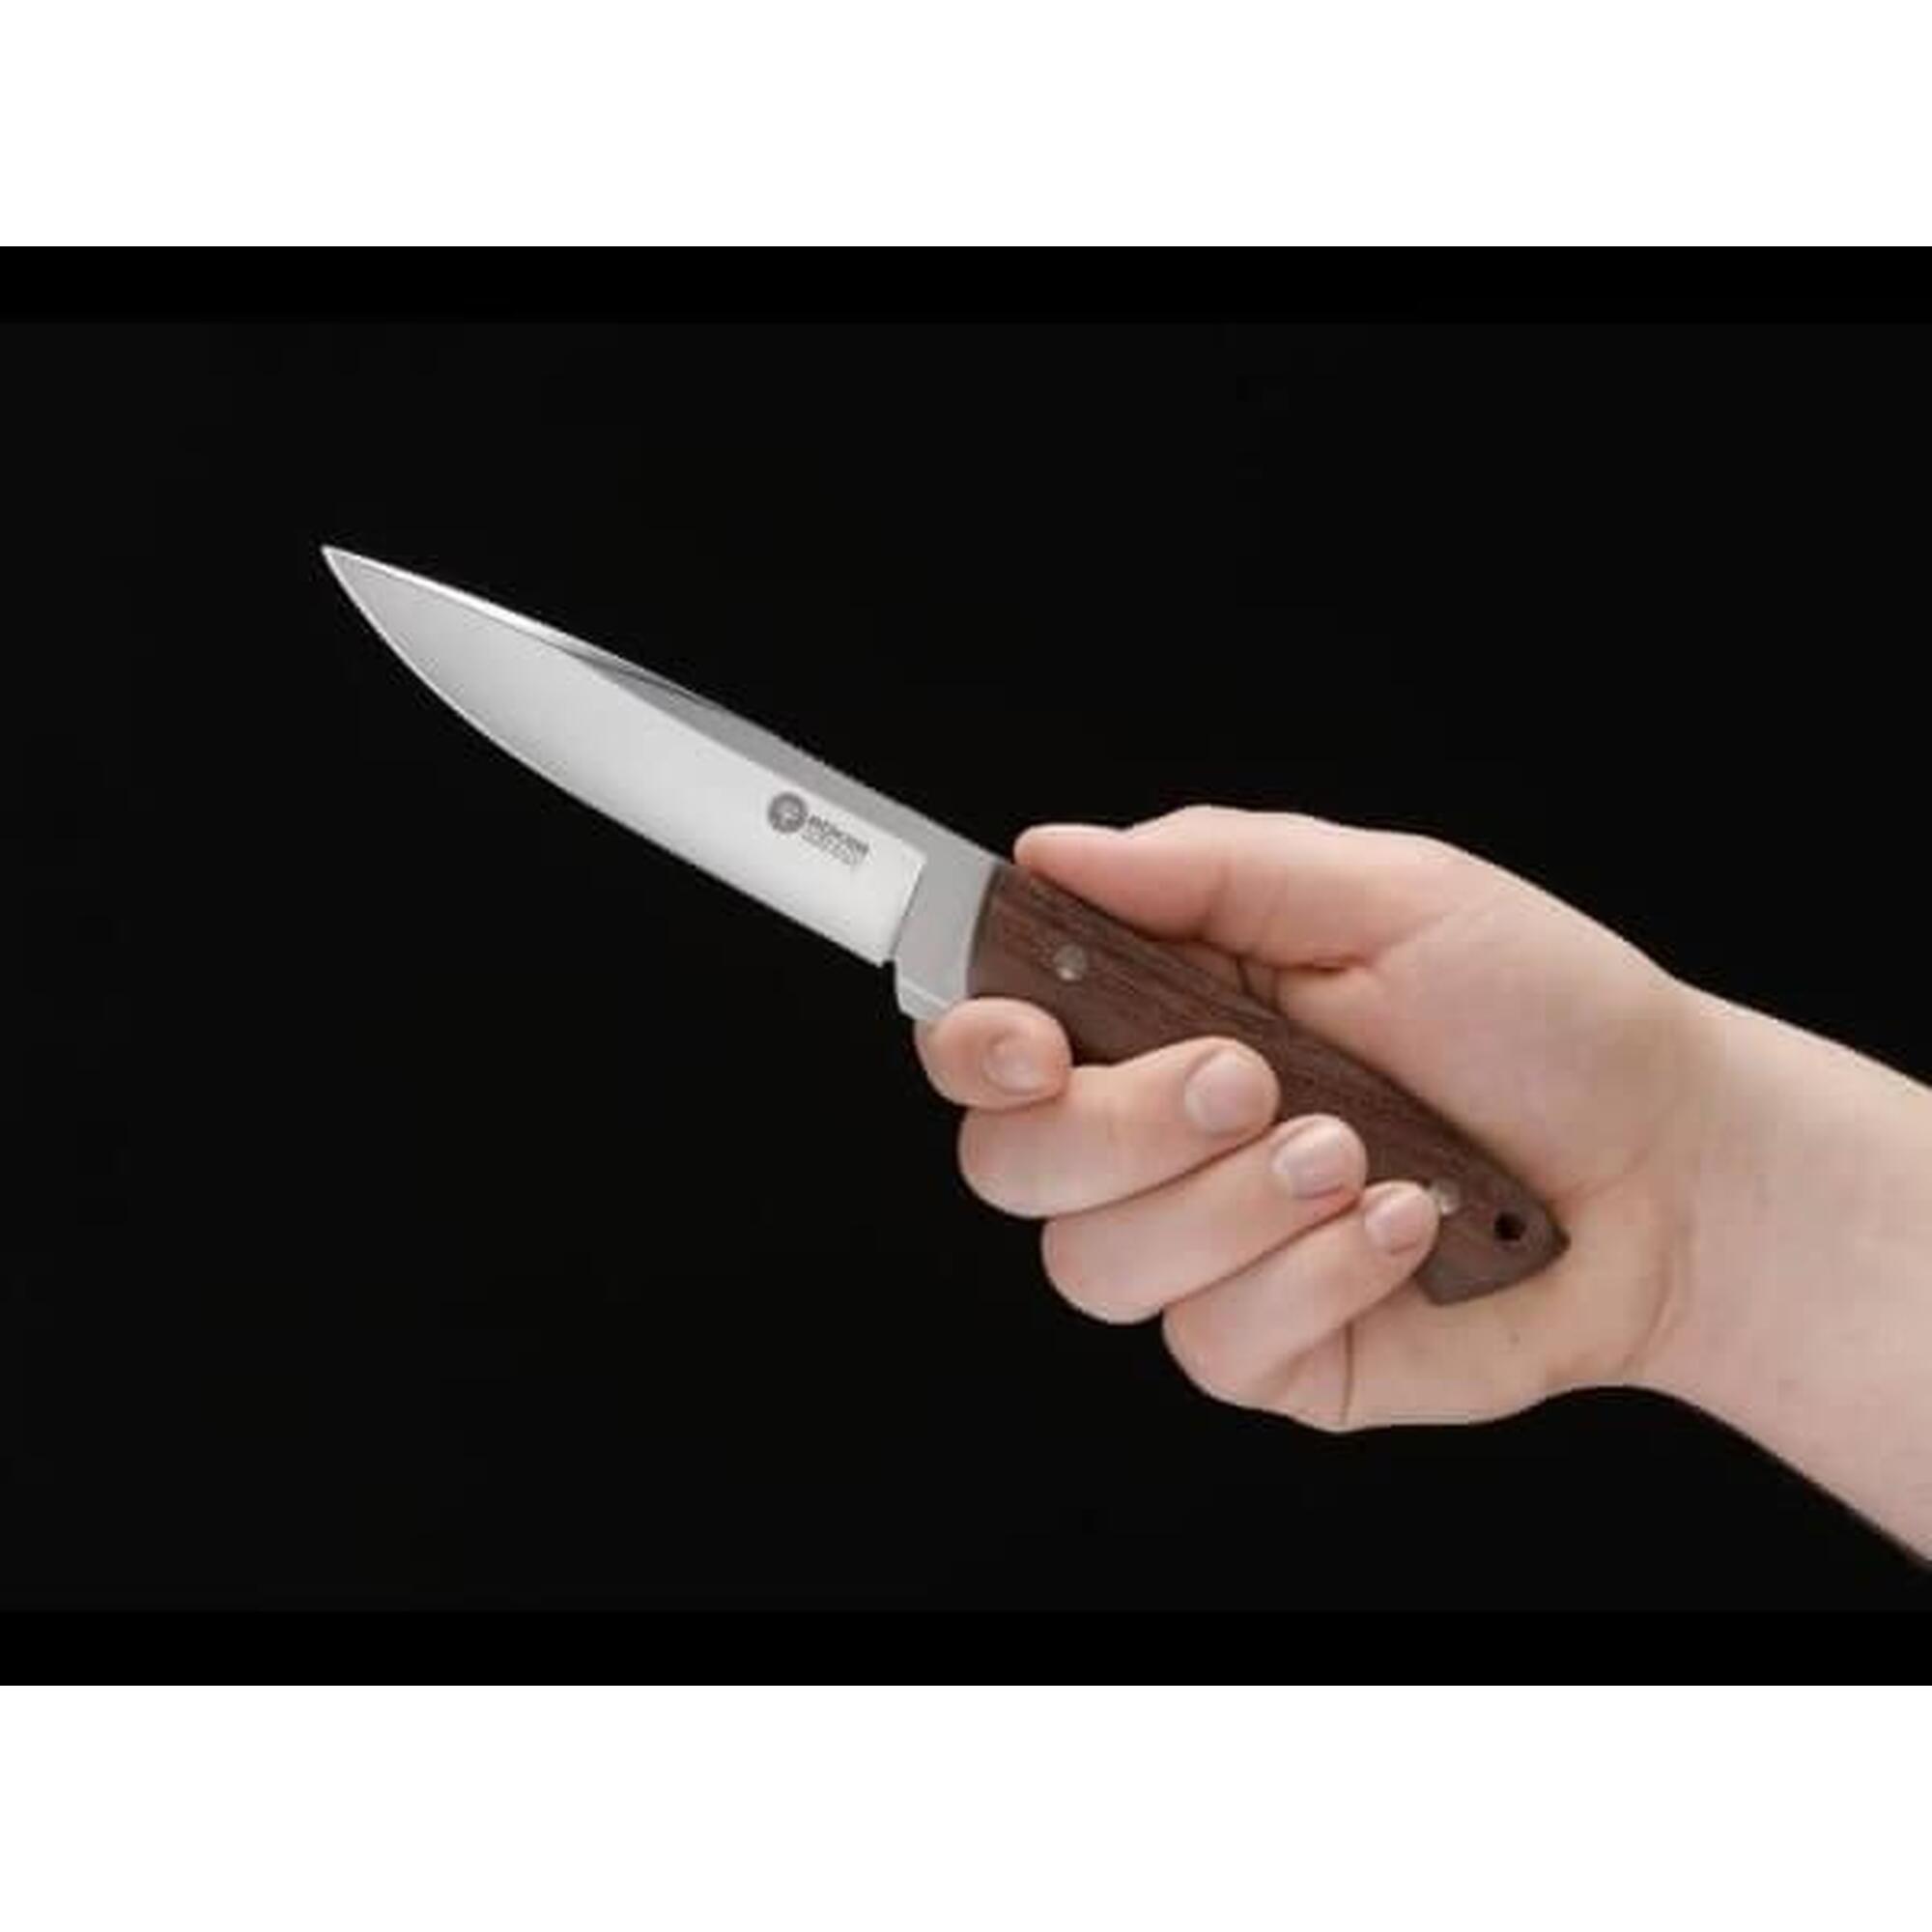 Böker Arbolito Relincho Madera feststehendes Messer mit Lederscheide